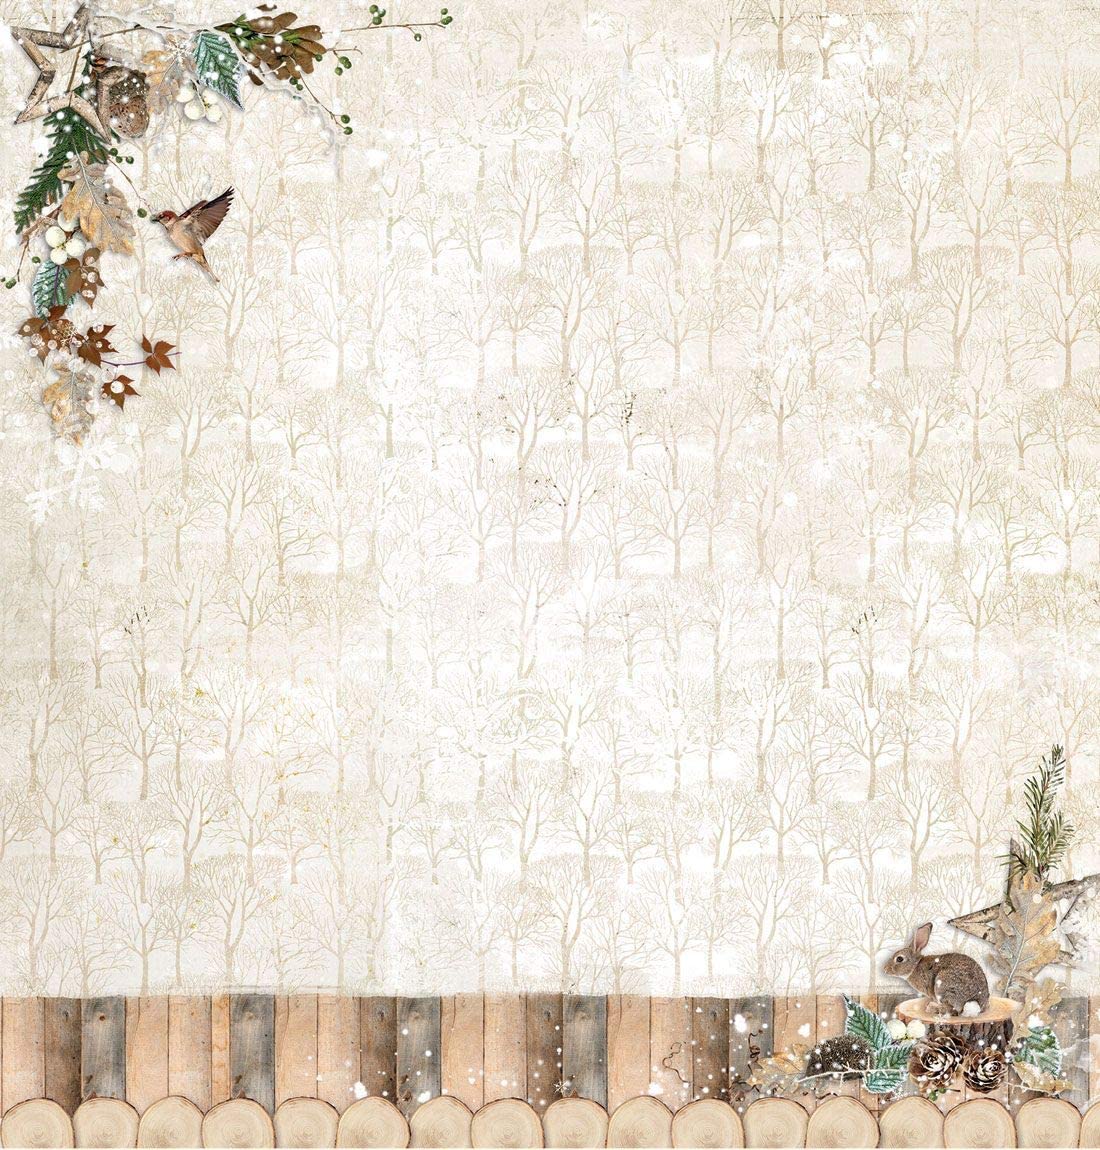 Scrapbook-Papier Doppelseitiges Papier, 30,5 x 30,5 cm, Wald Winter Tiere